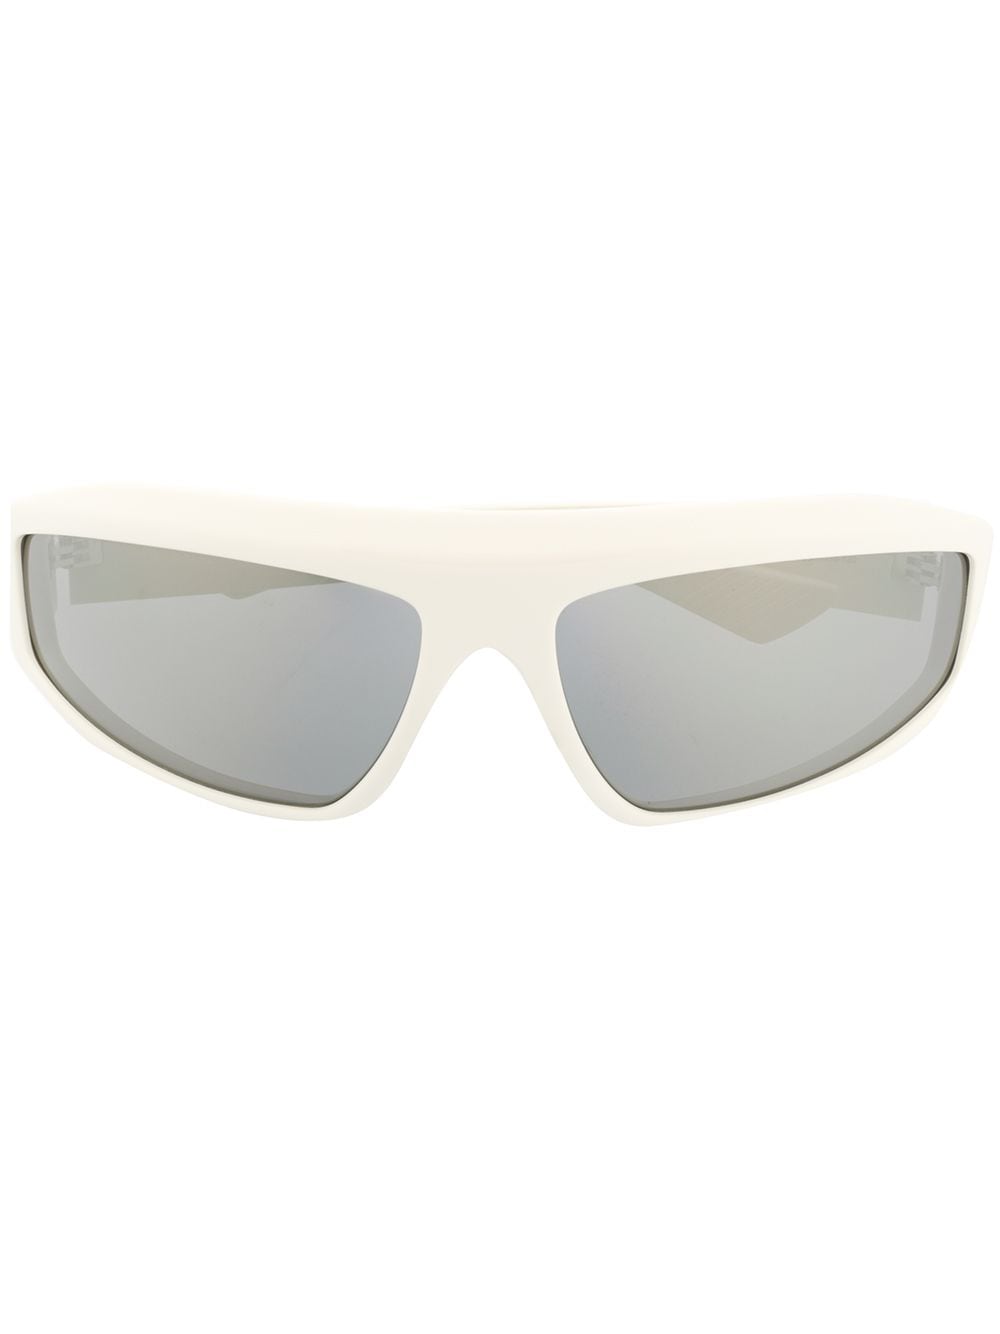 фото Bottega veneta солнцезащитные очки в спортивном стиле